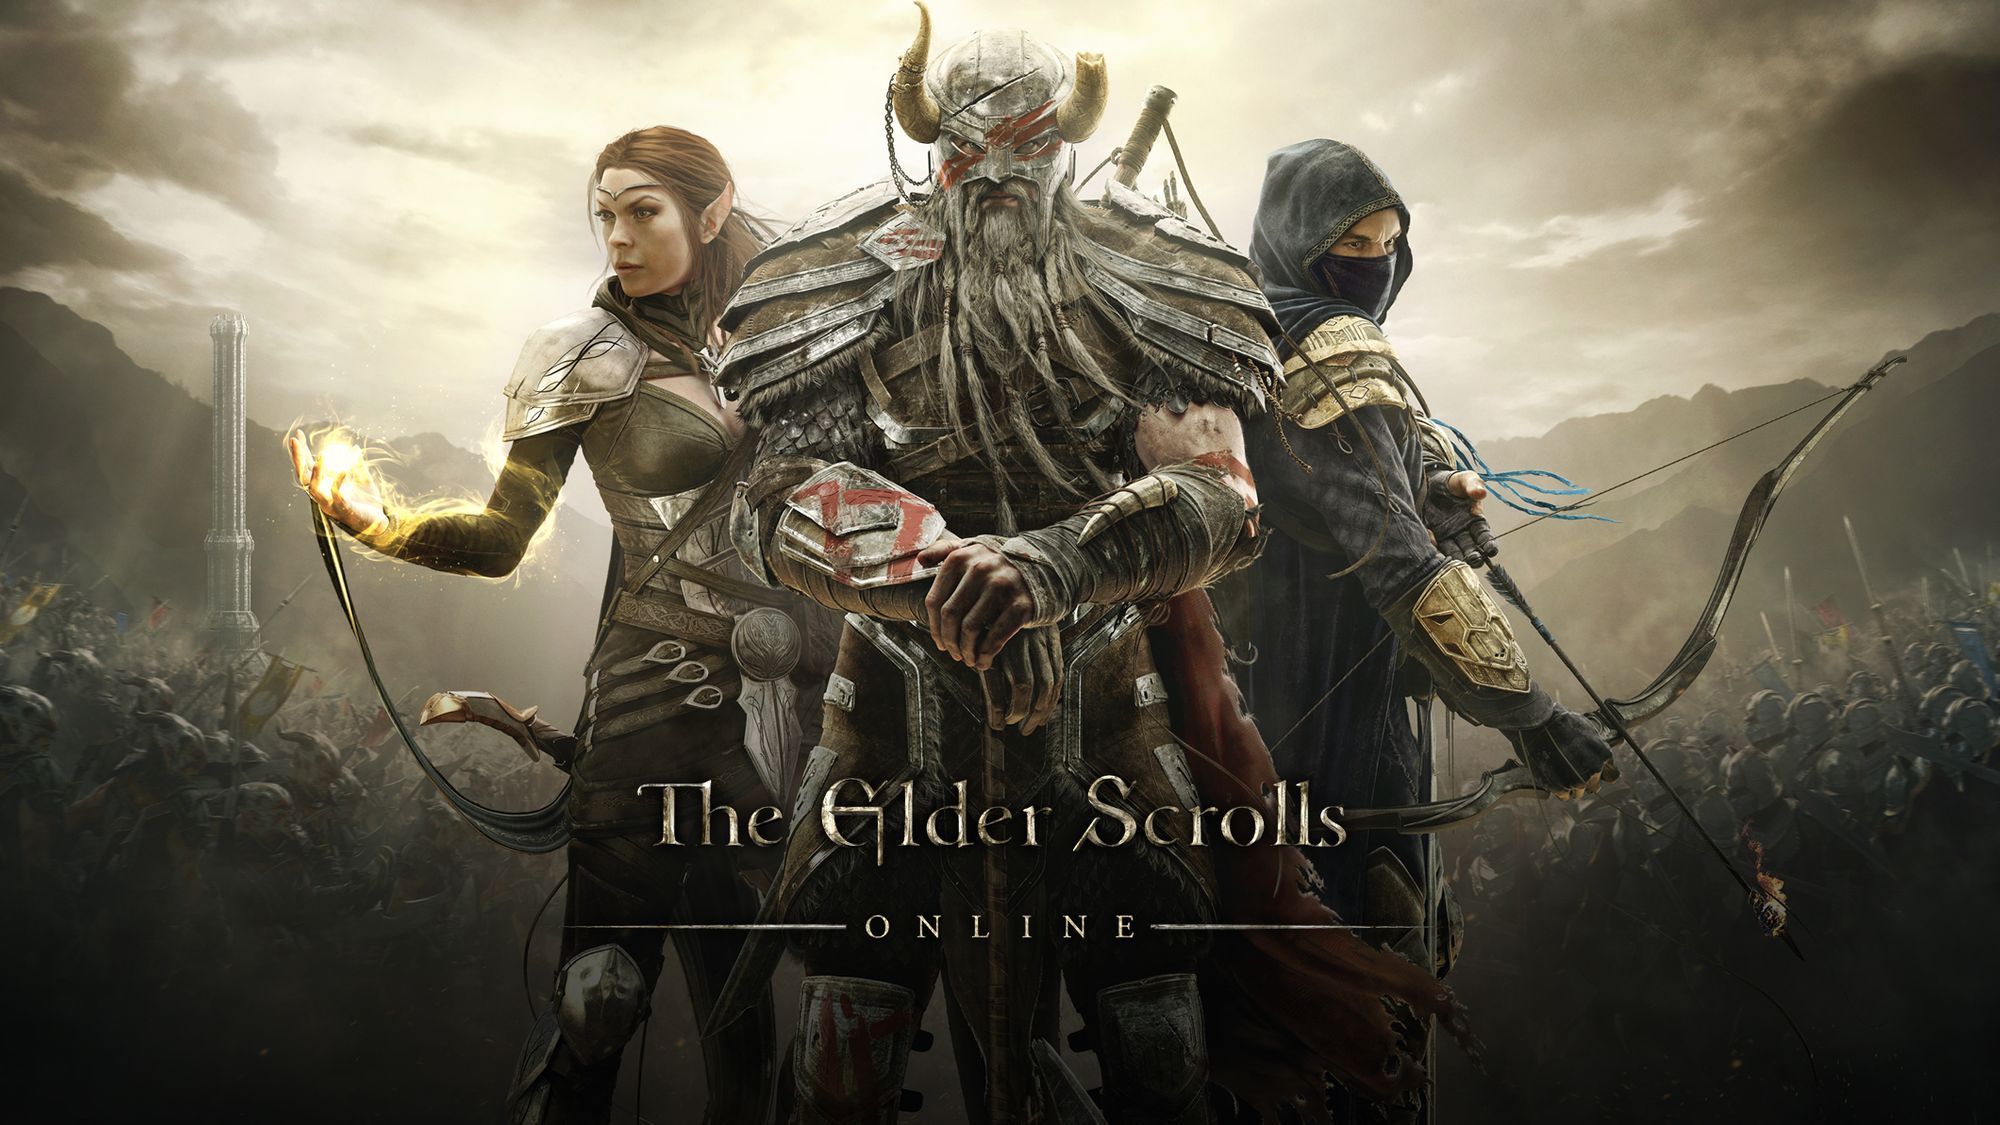 Игра The Elder Scrolls станет бесплатной